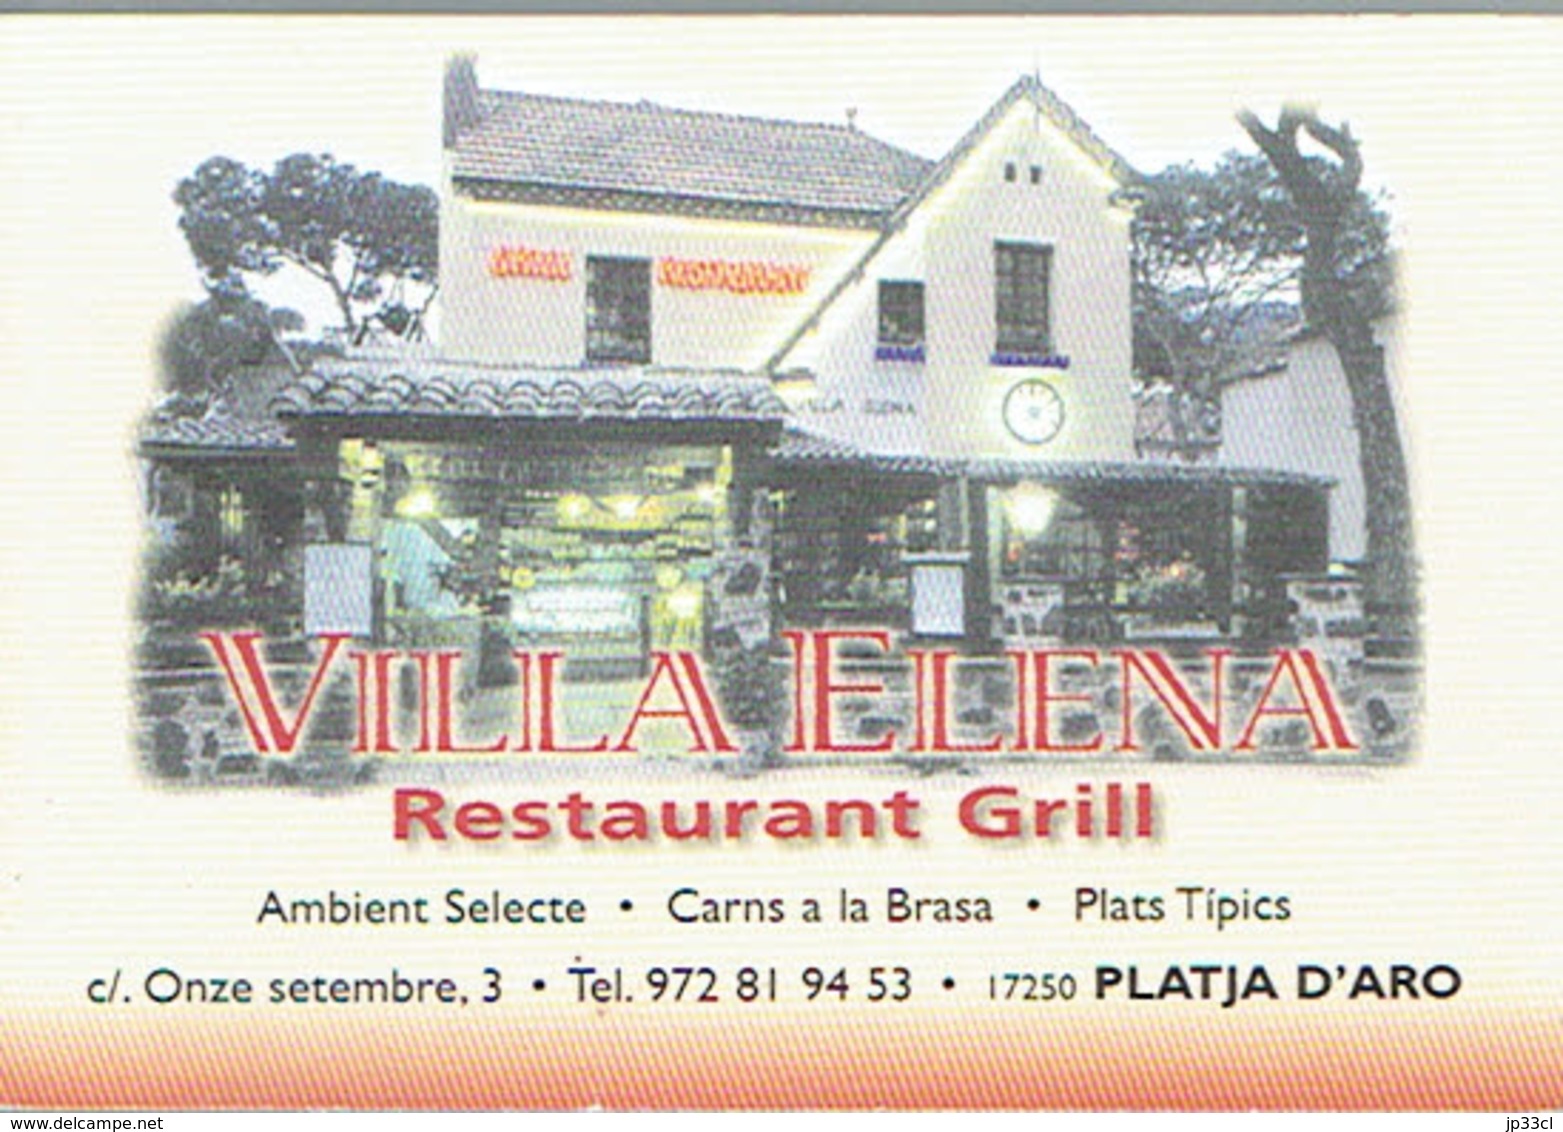 Carte De Visite Du Restaurant Grill Villa Elena, Playa De Aro (Espagne) Vers 1999/2000 - Tarjetas De Visita